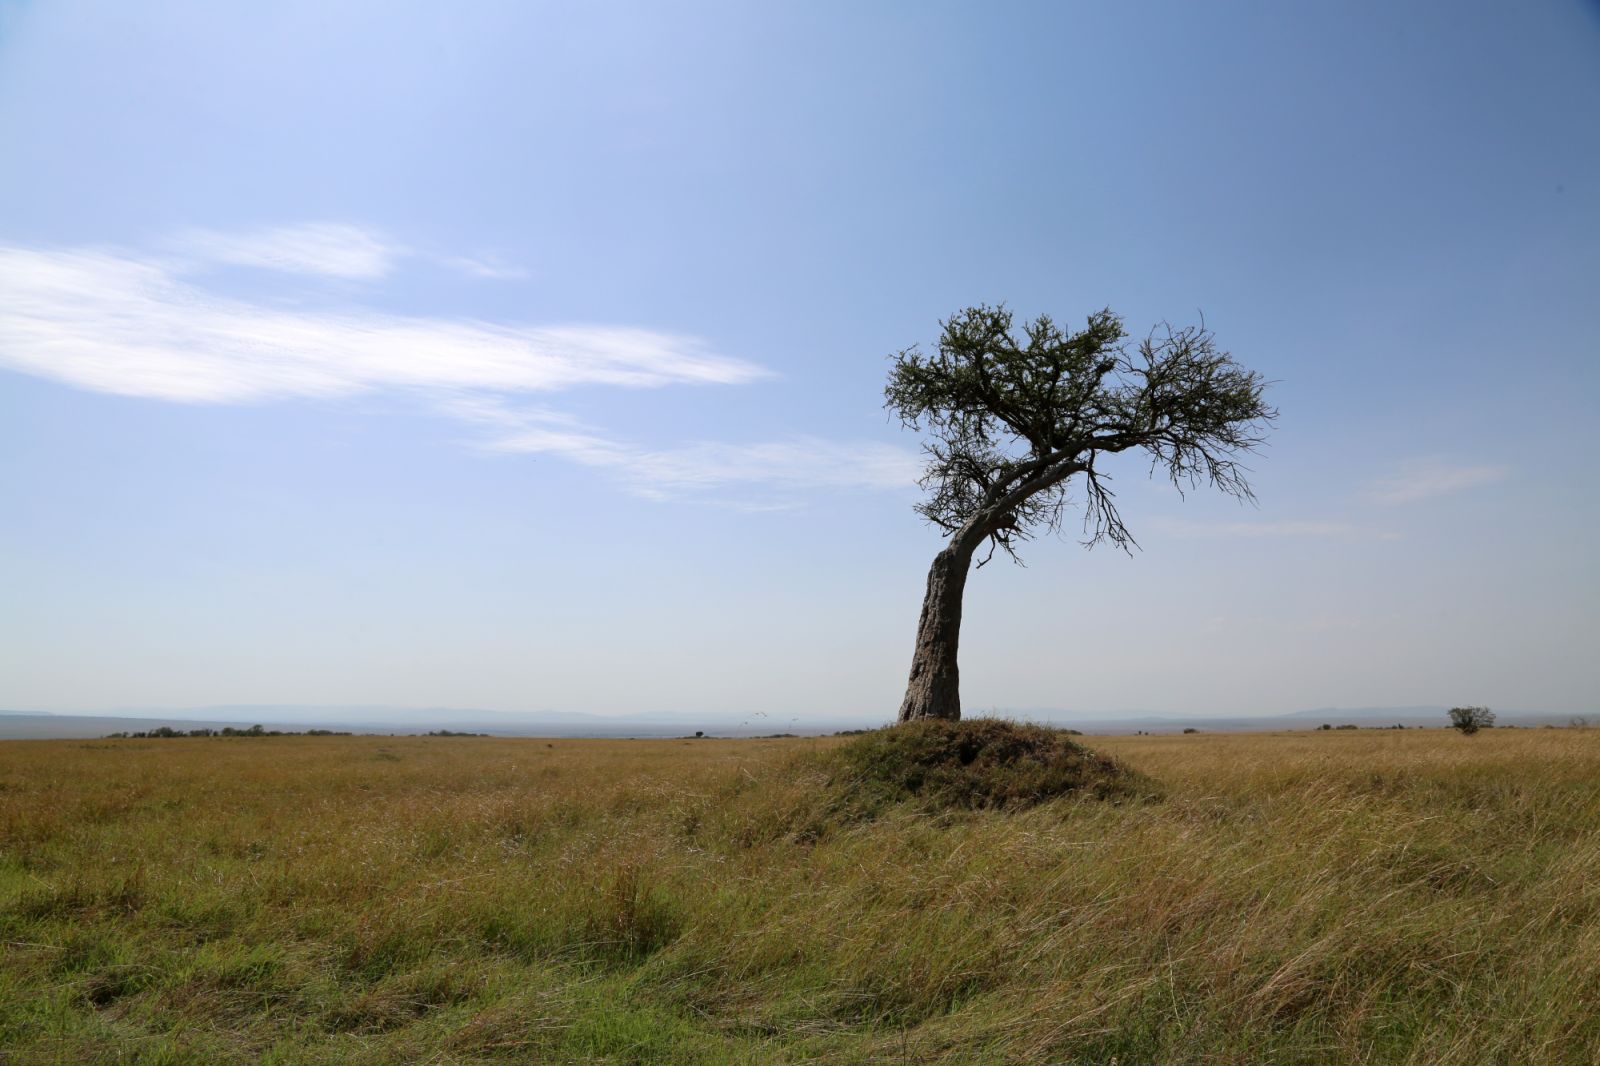 Kenya's great landscape